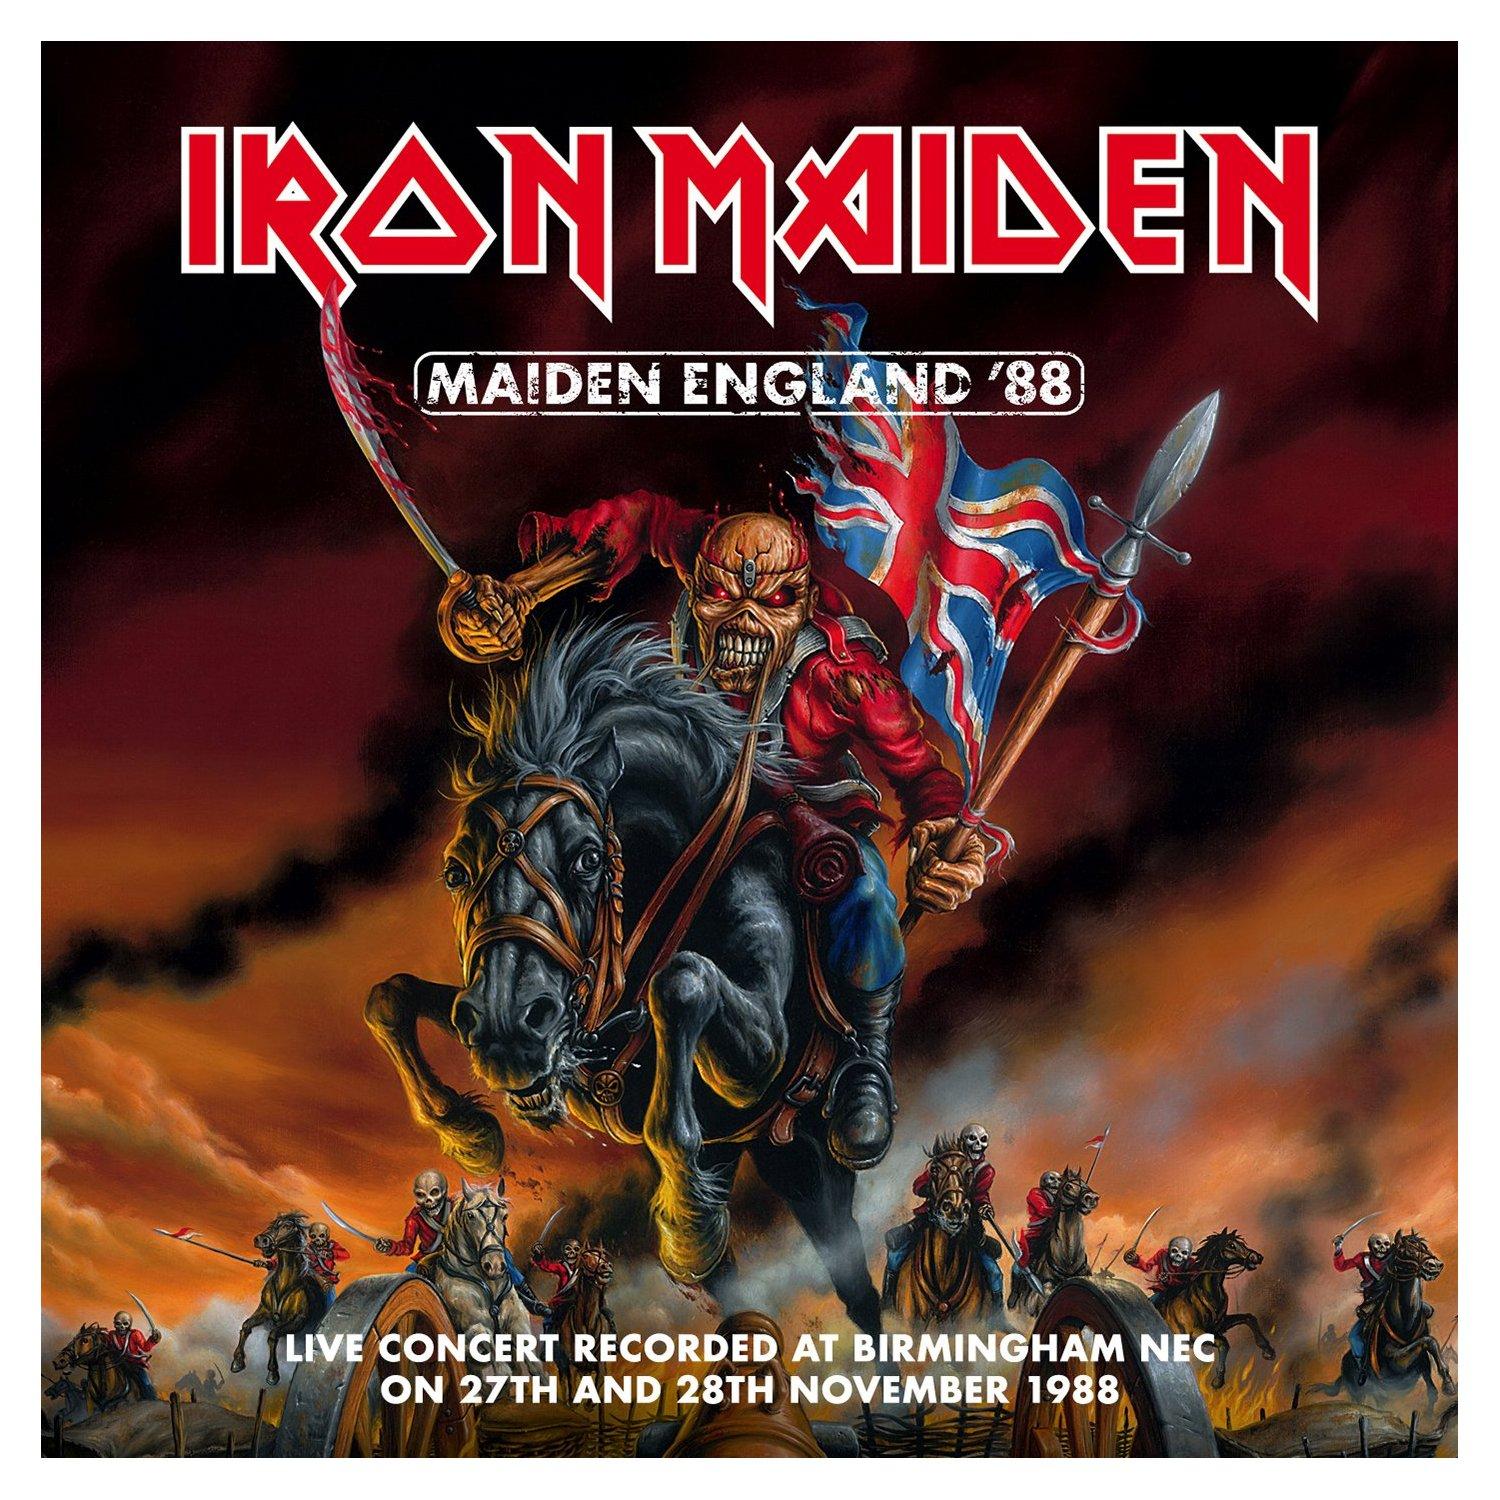 MAIDEN ENGLAND '88 - Iron Maiden, 2013